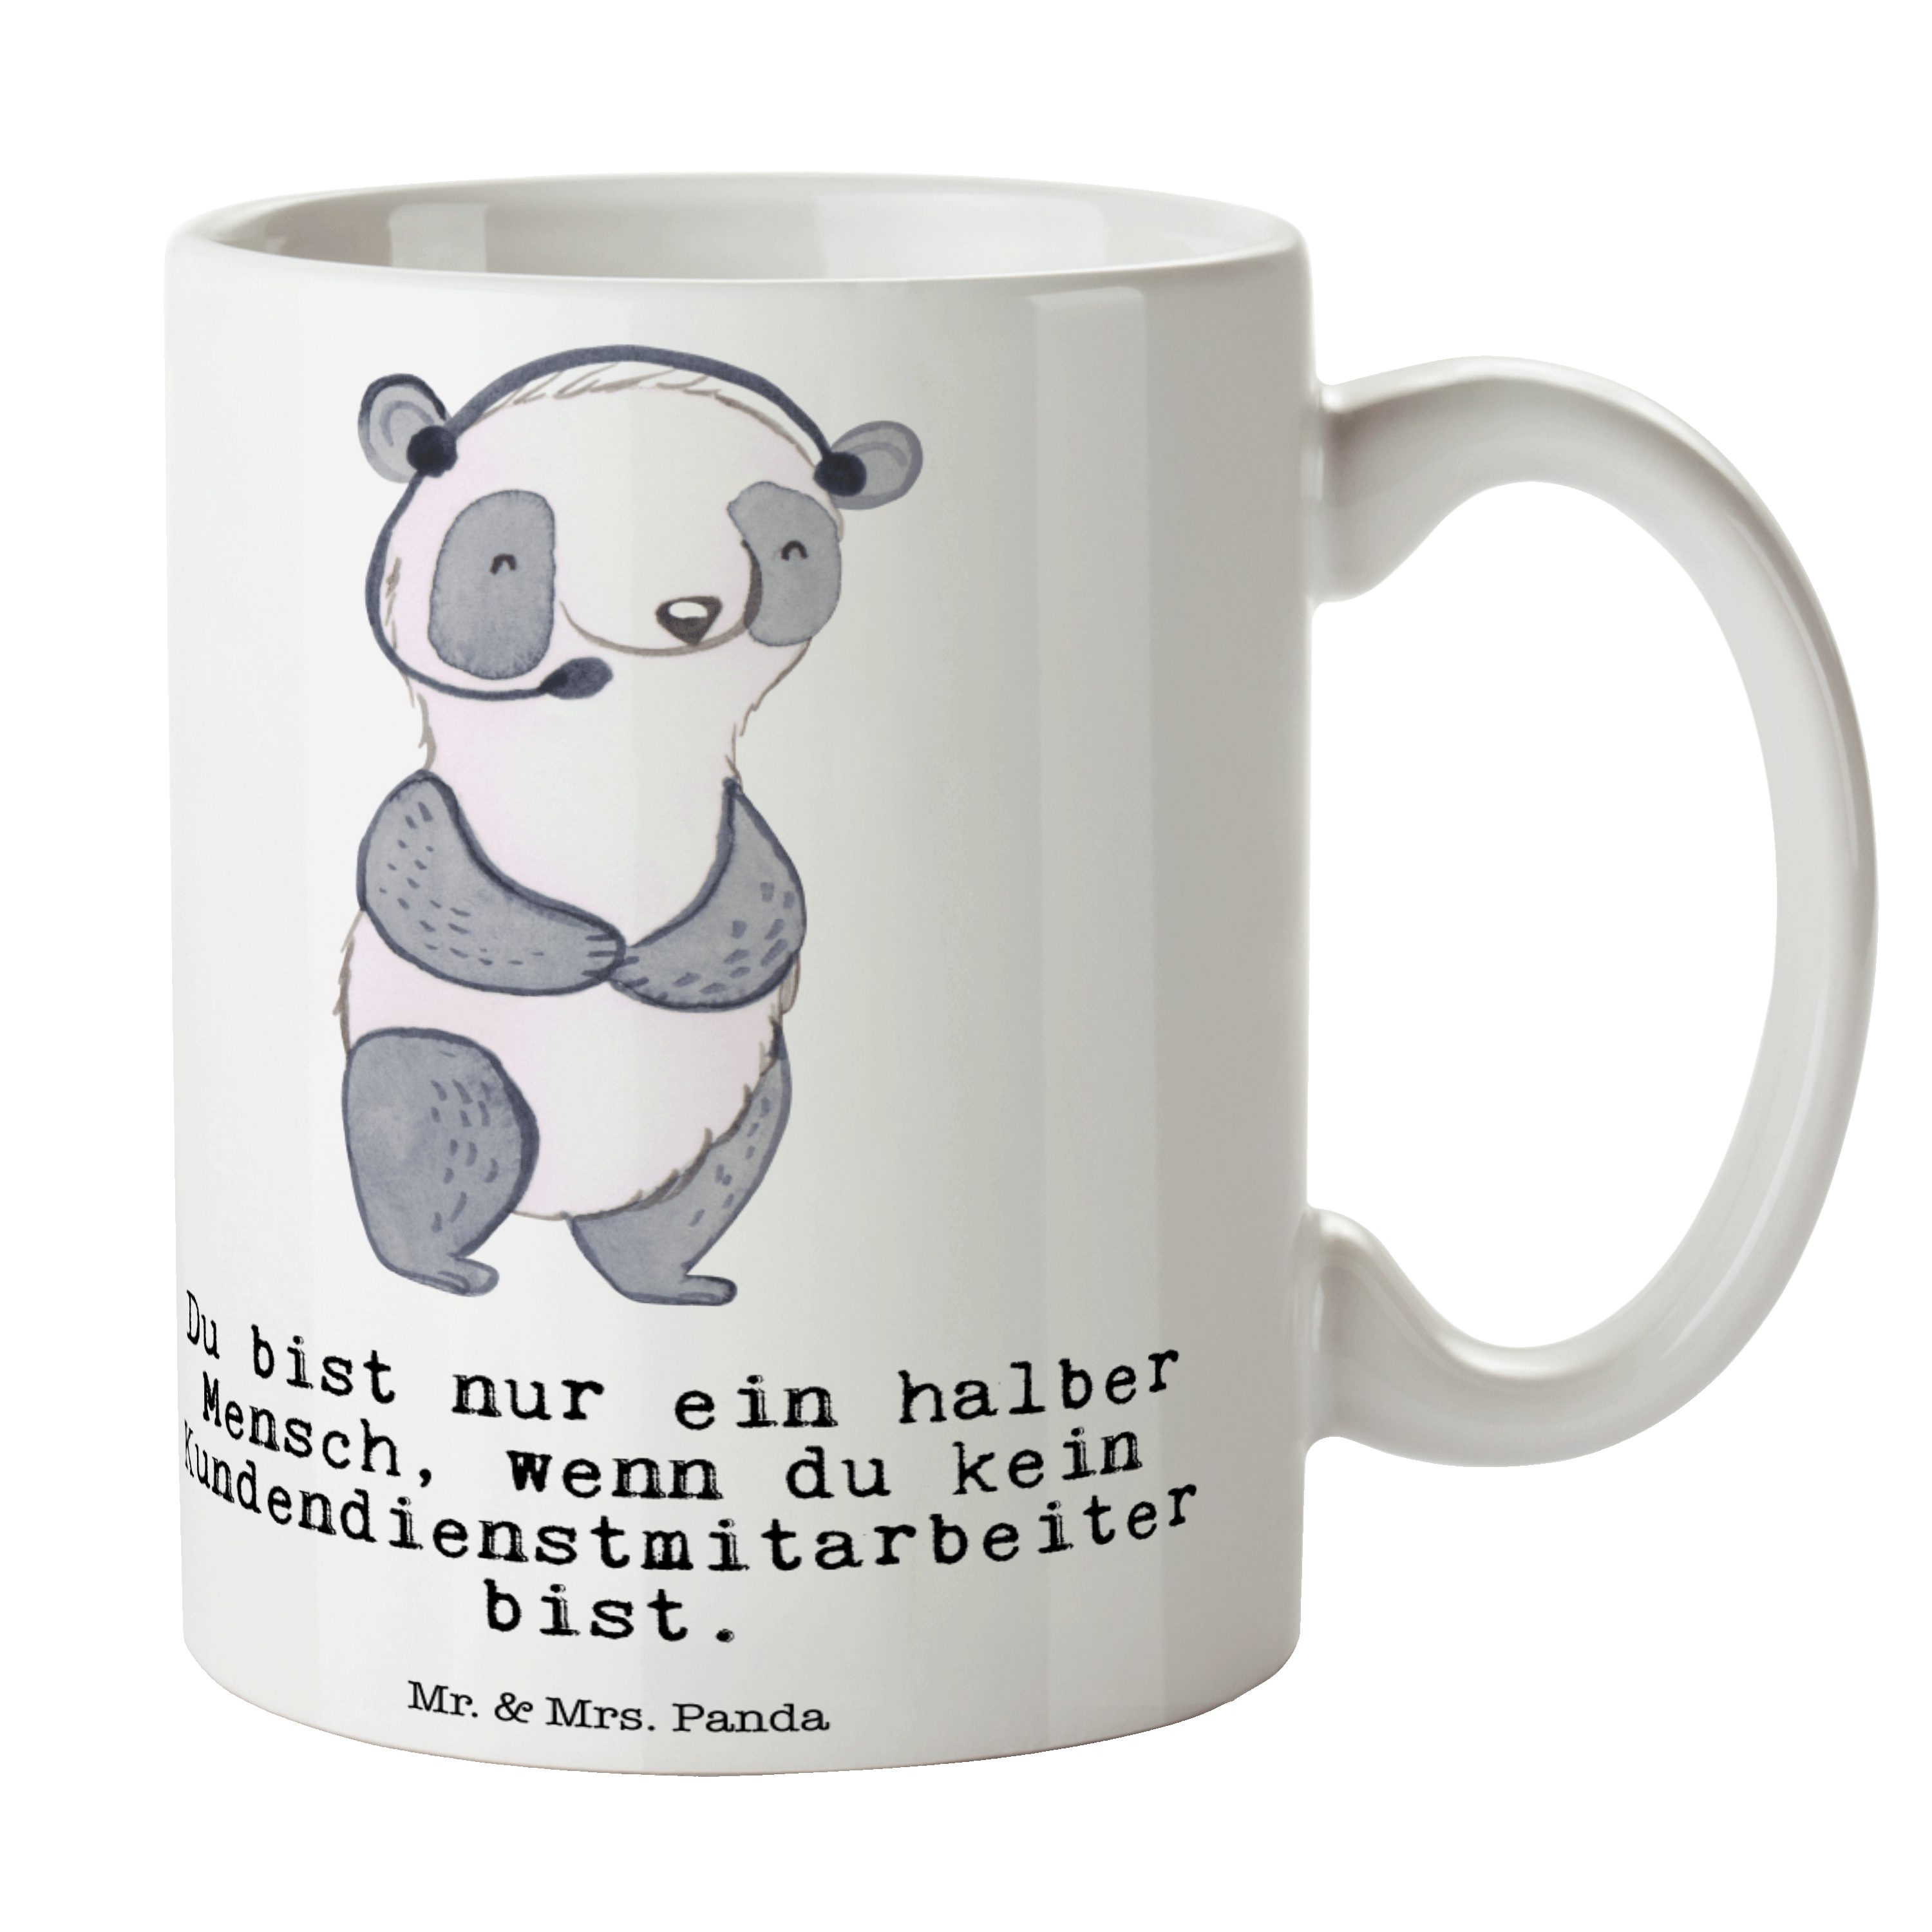 Mr. & Mrs. Panda Tasse Kundendienstmitarbeiter mit Herz - Weiß - Geschenk, Kaffeebecher, Fir, Keramik